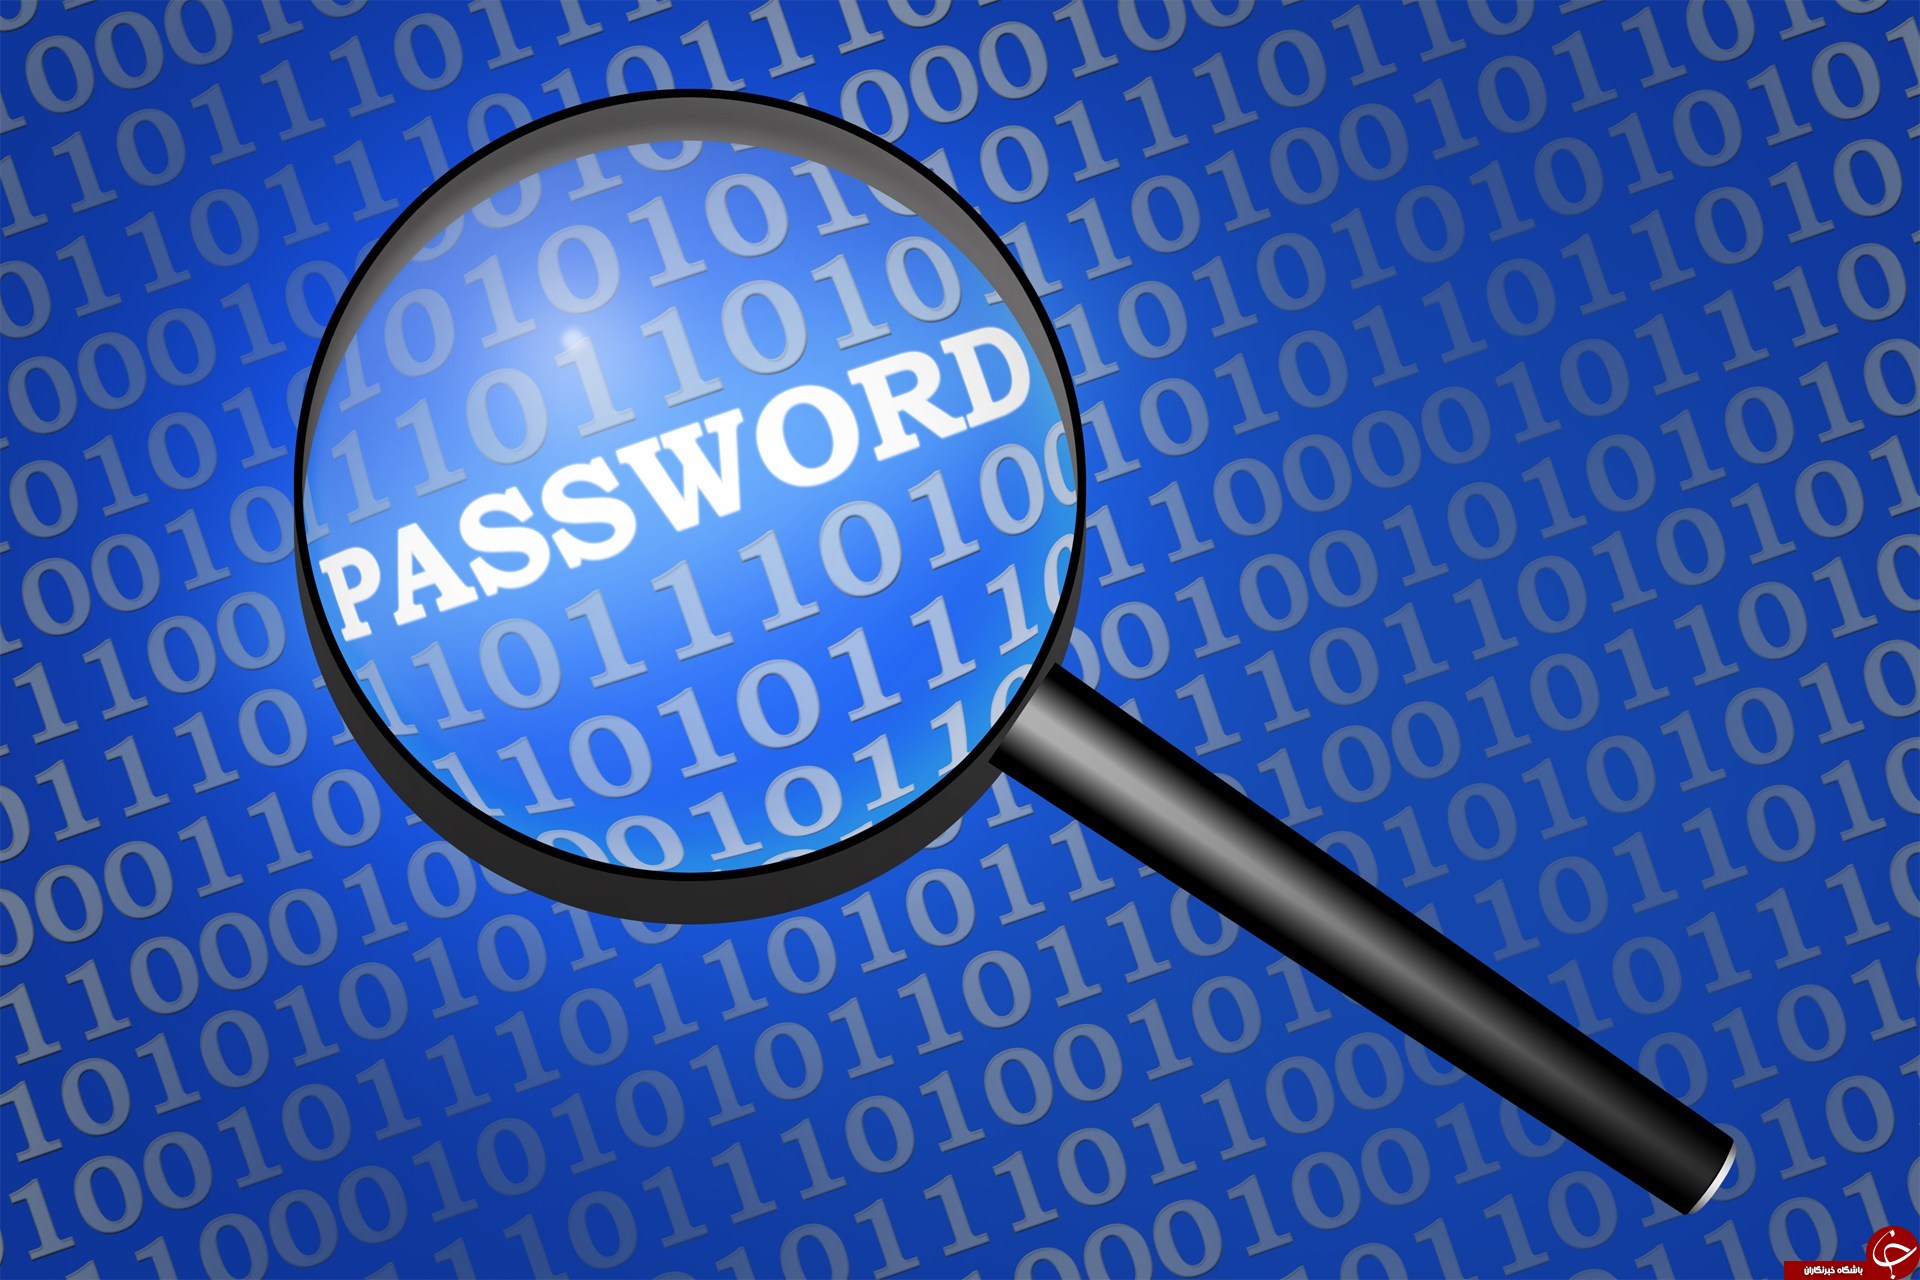 رمز عبور های مدیریت شده و غیرقایل هک